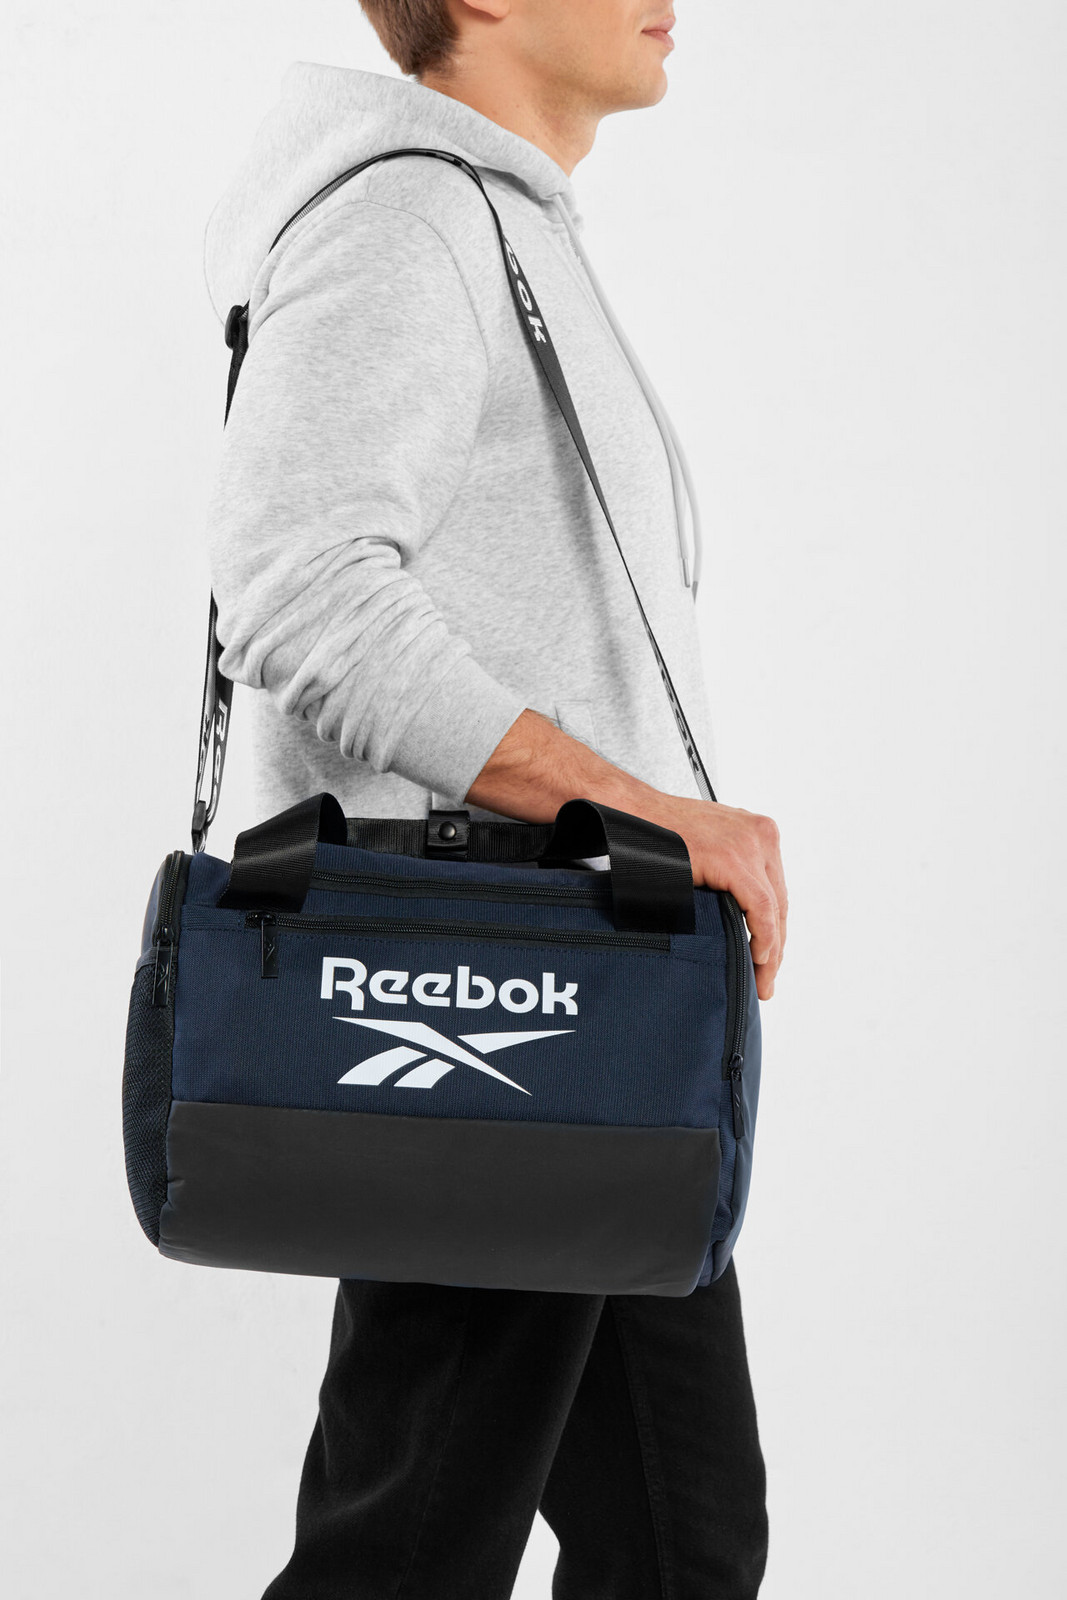 Batohy a tašky Reebok RBK-035-CCC-05